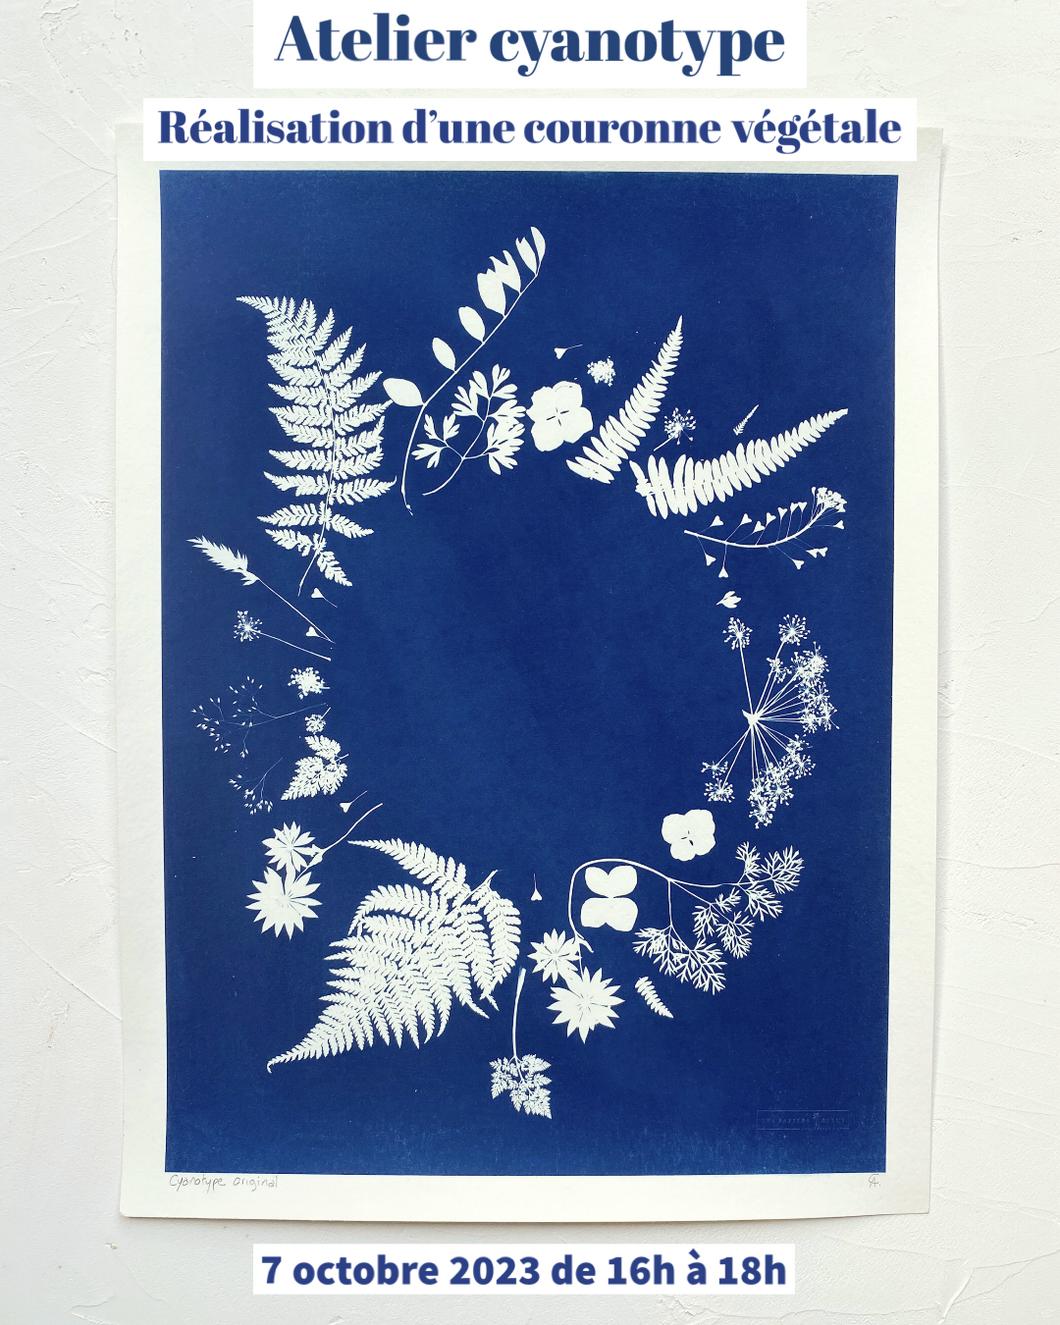 Atelier cyanotype couronne végétale le 7 octobre 2023